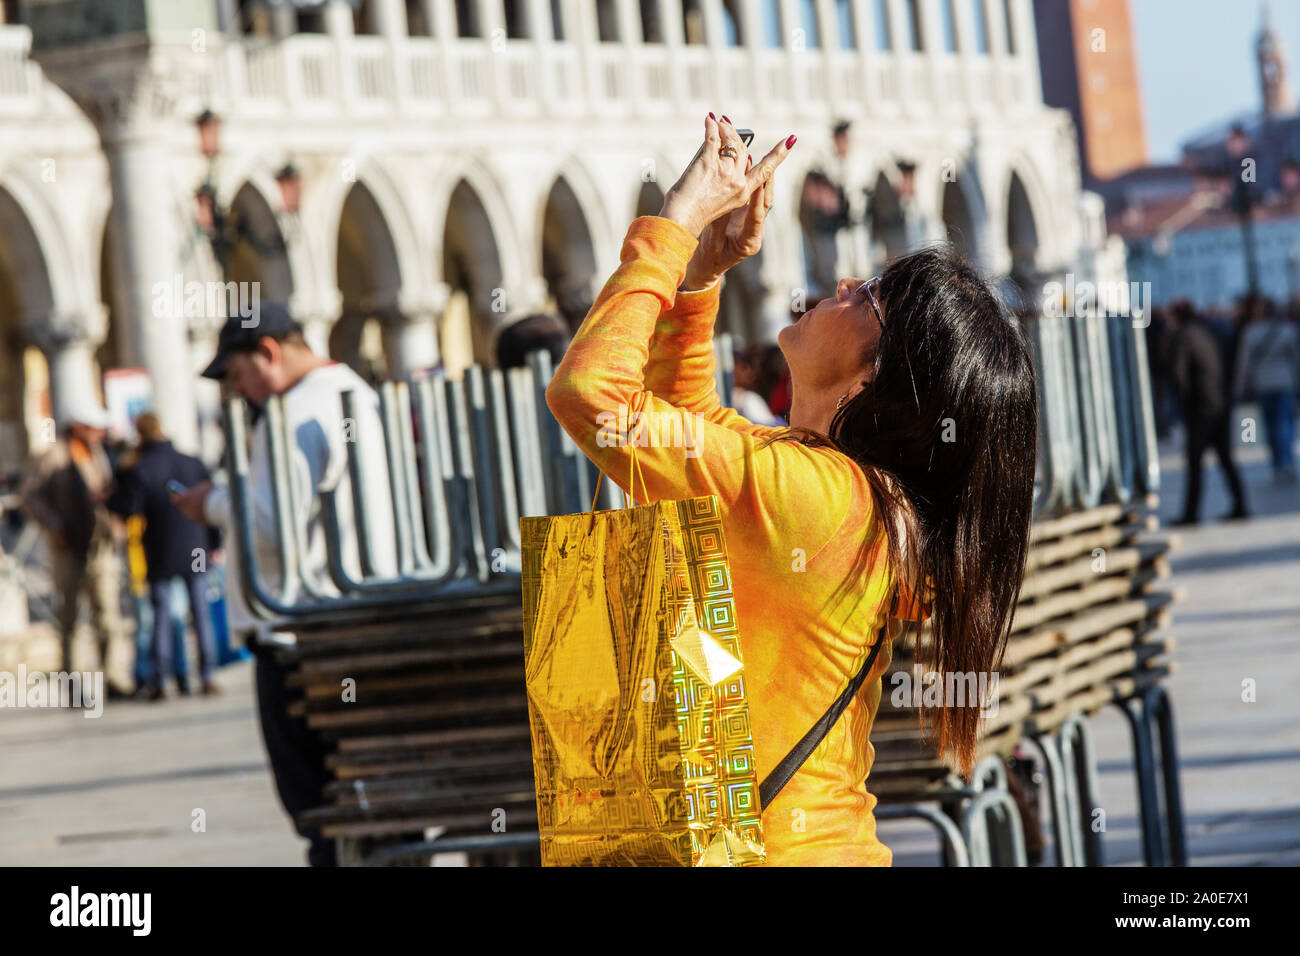 Venise, Italie - 18 MAR - woman taking photo dans la place Saint Marc sur Mars 18, 2015 à Venise, Italie. Banque D'Images